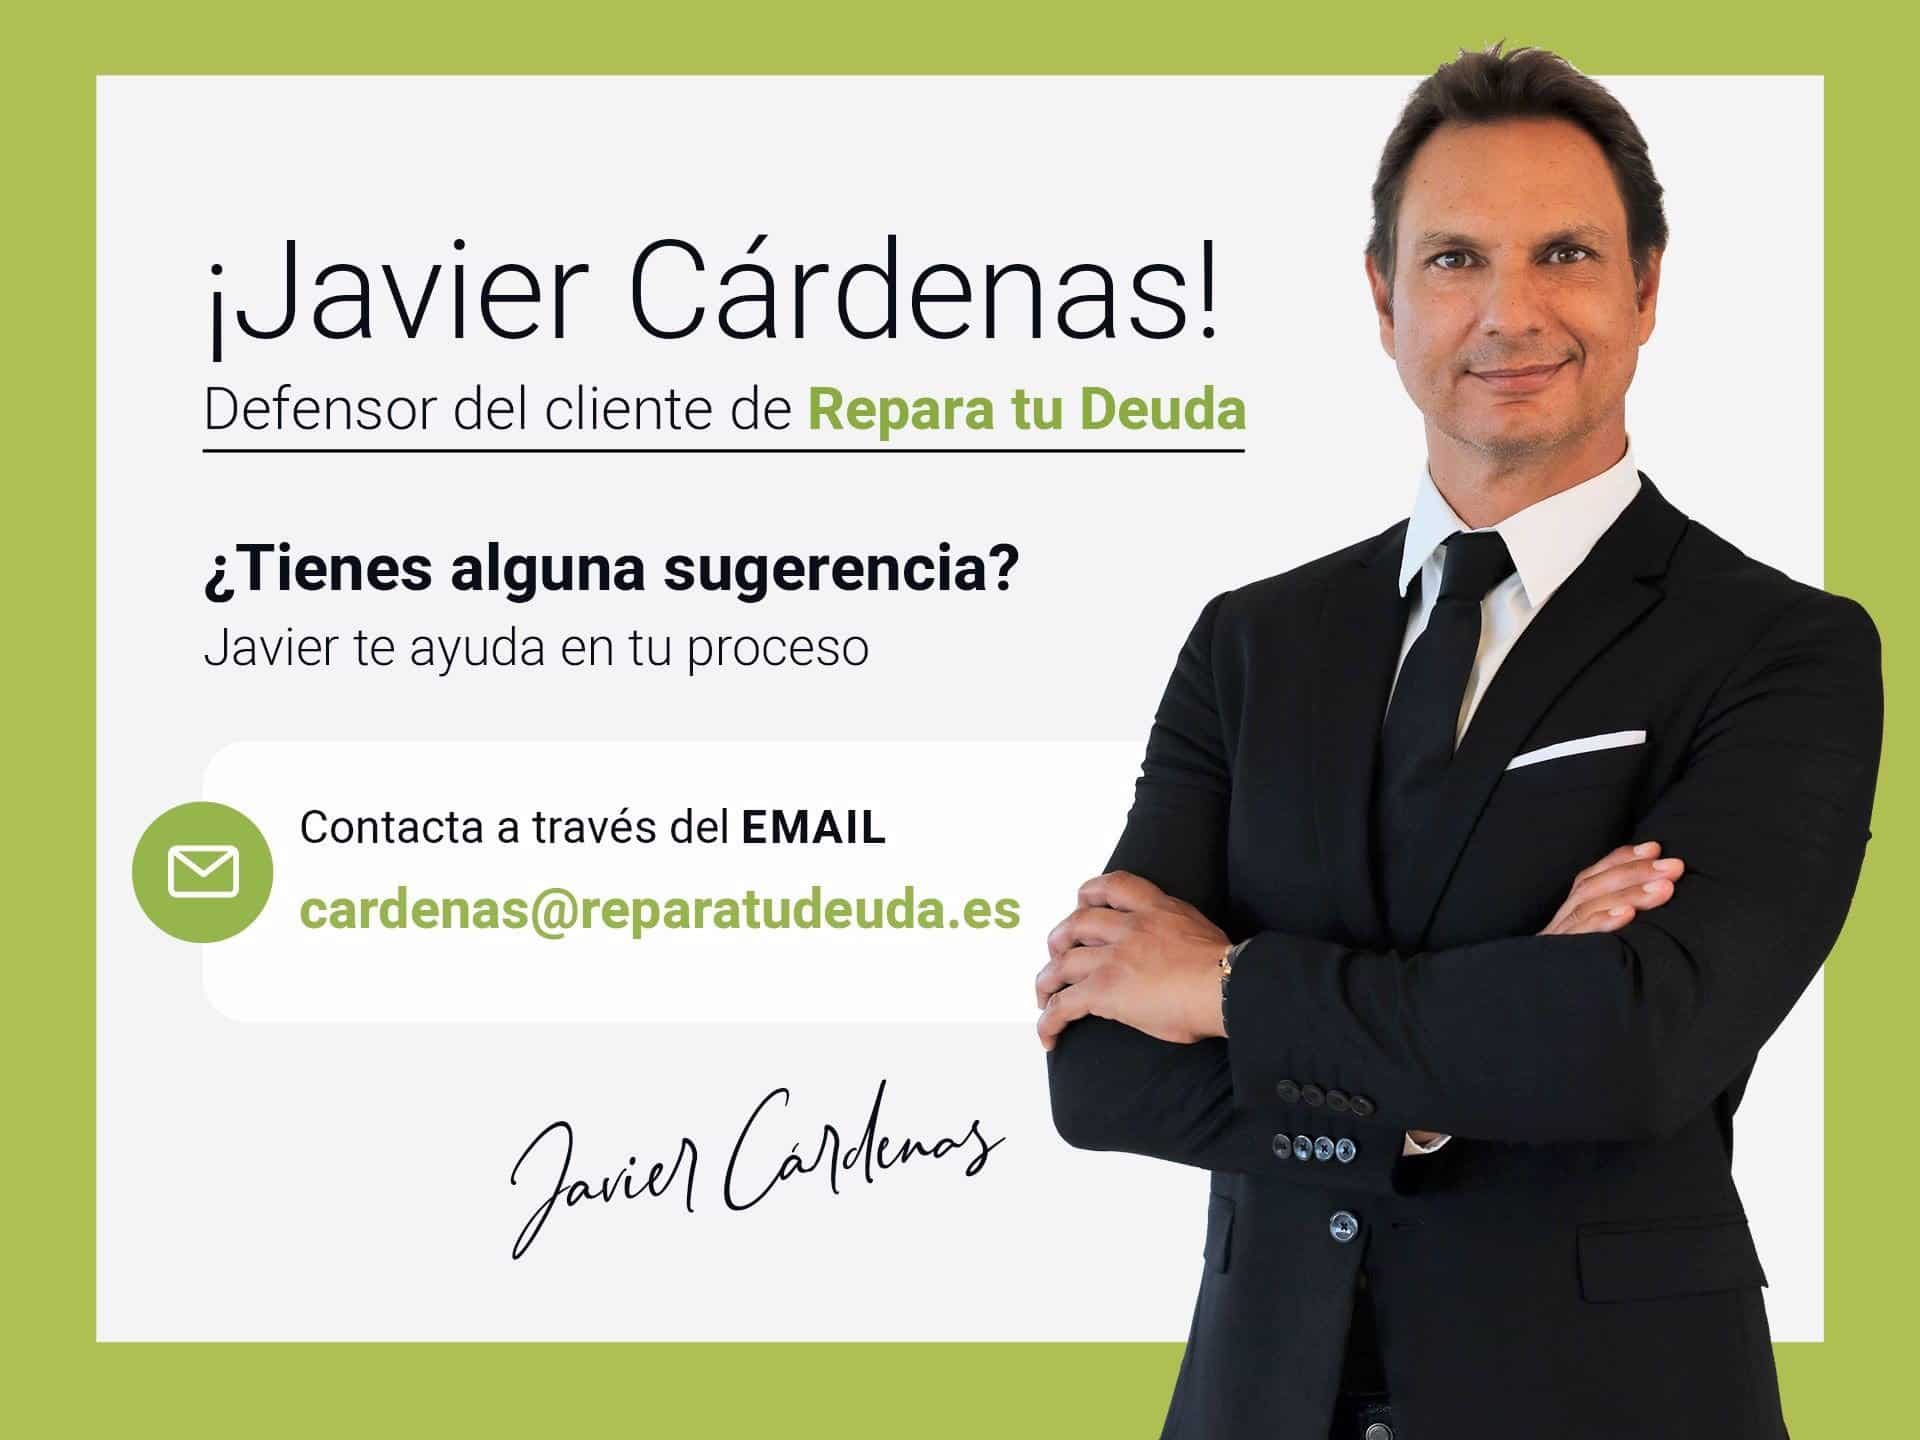 Javier Cárdenas, de estrella de Europa FM a Defensor del cliente para el despacho Repara tu deuda